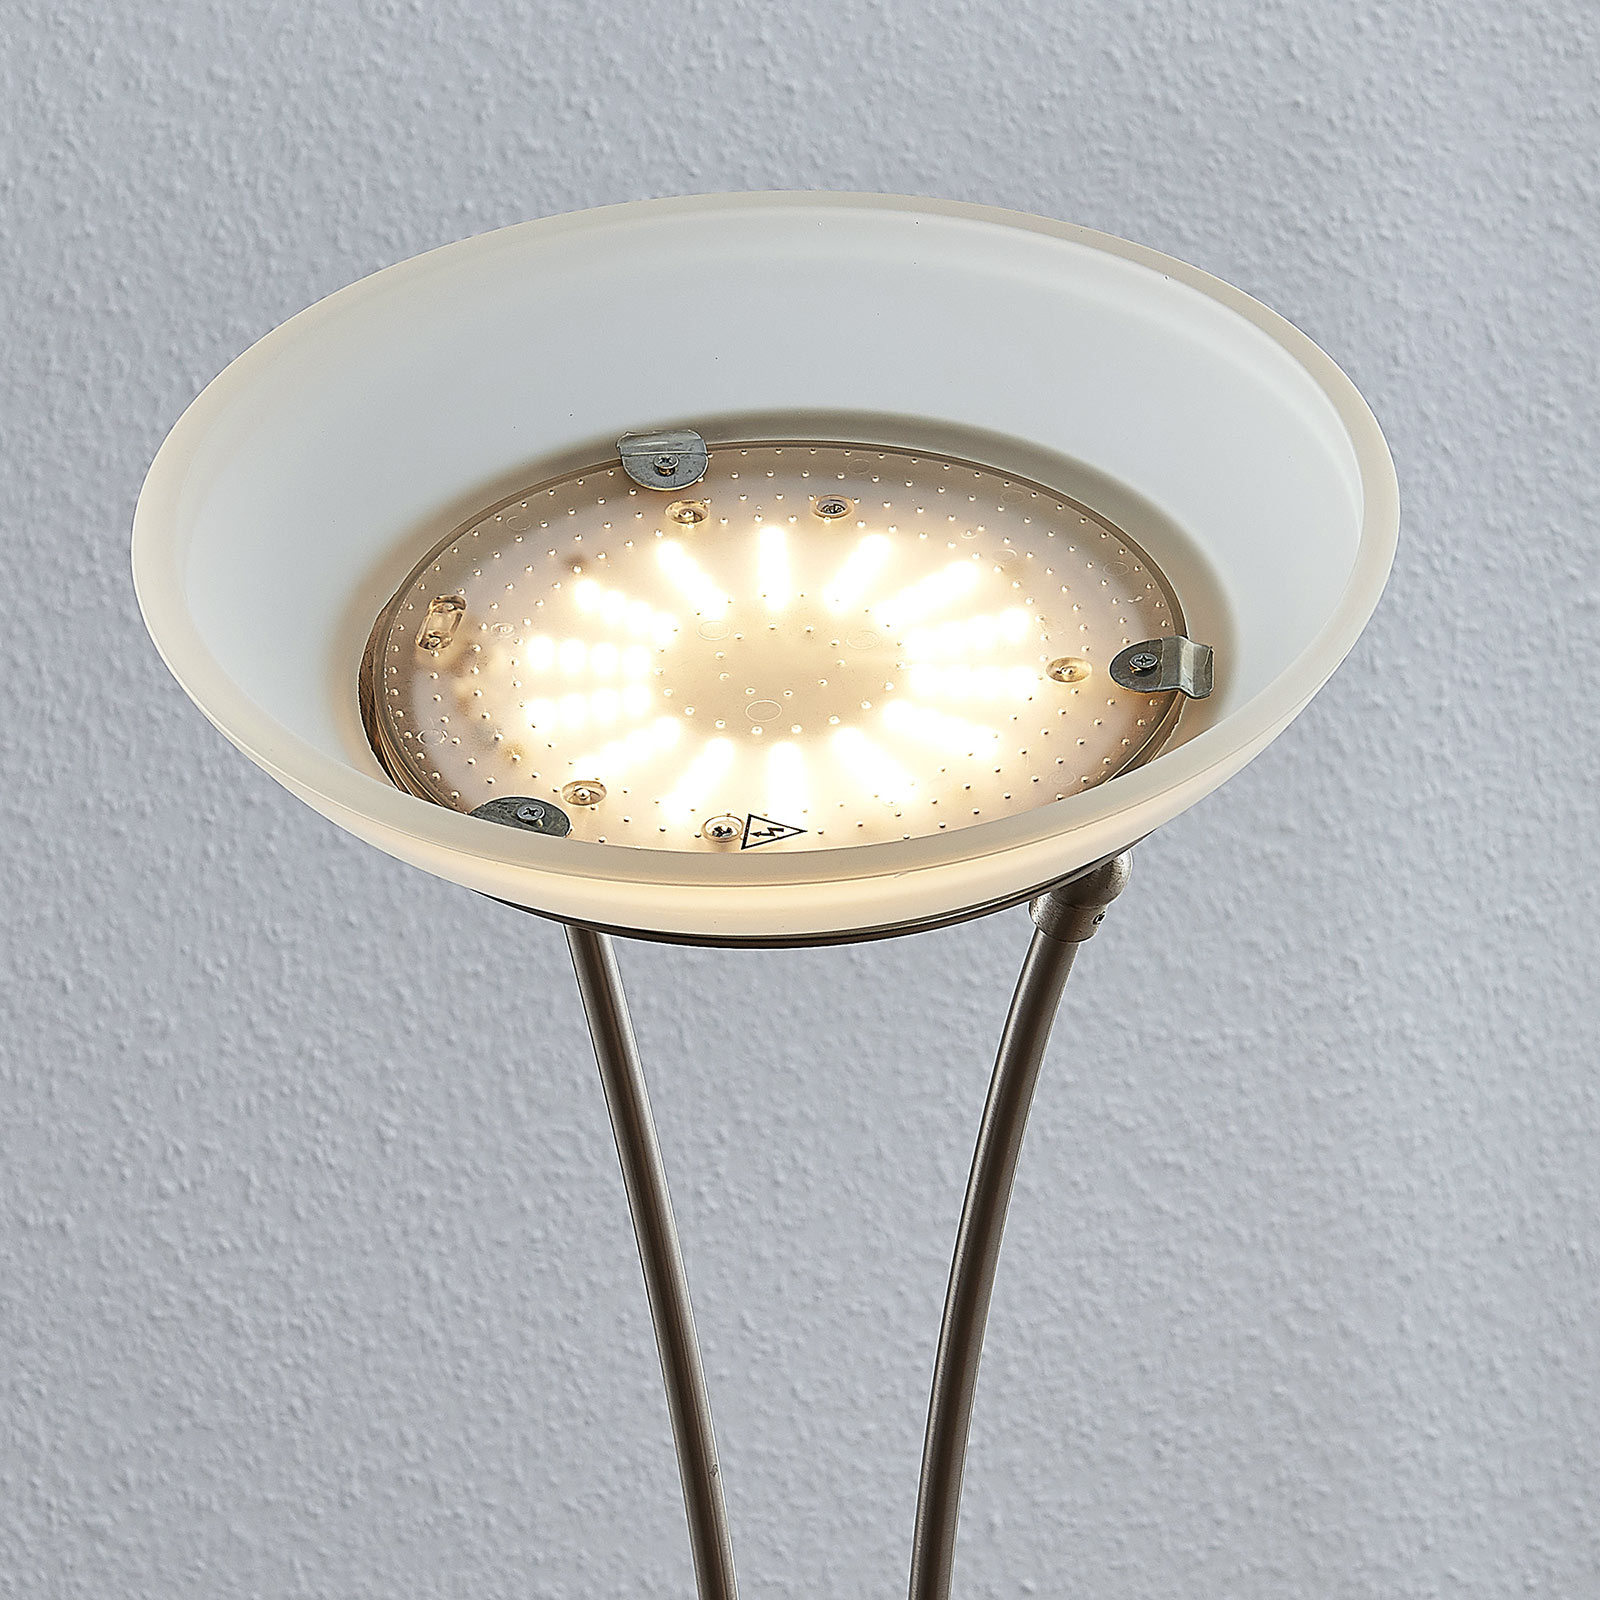 LED stojací lampa Amadou, čtecí světlo, nikl